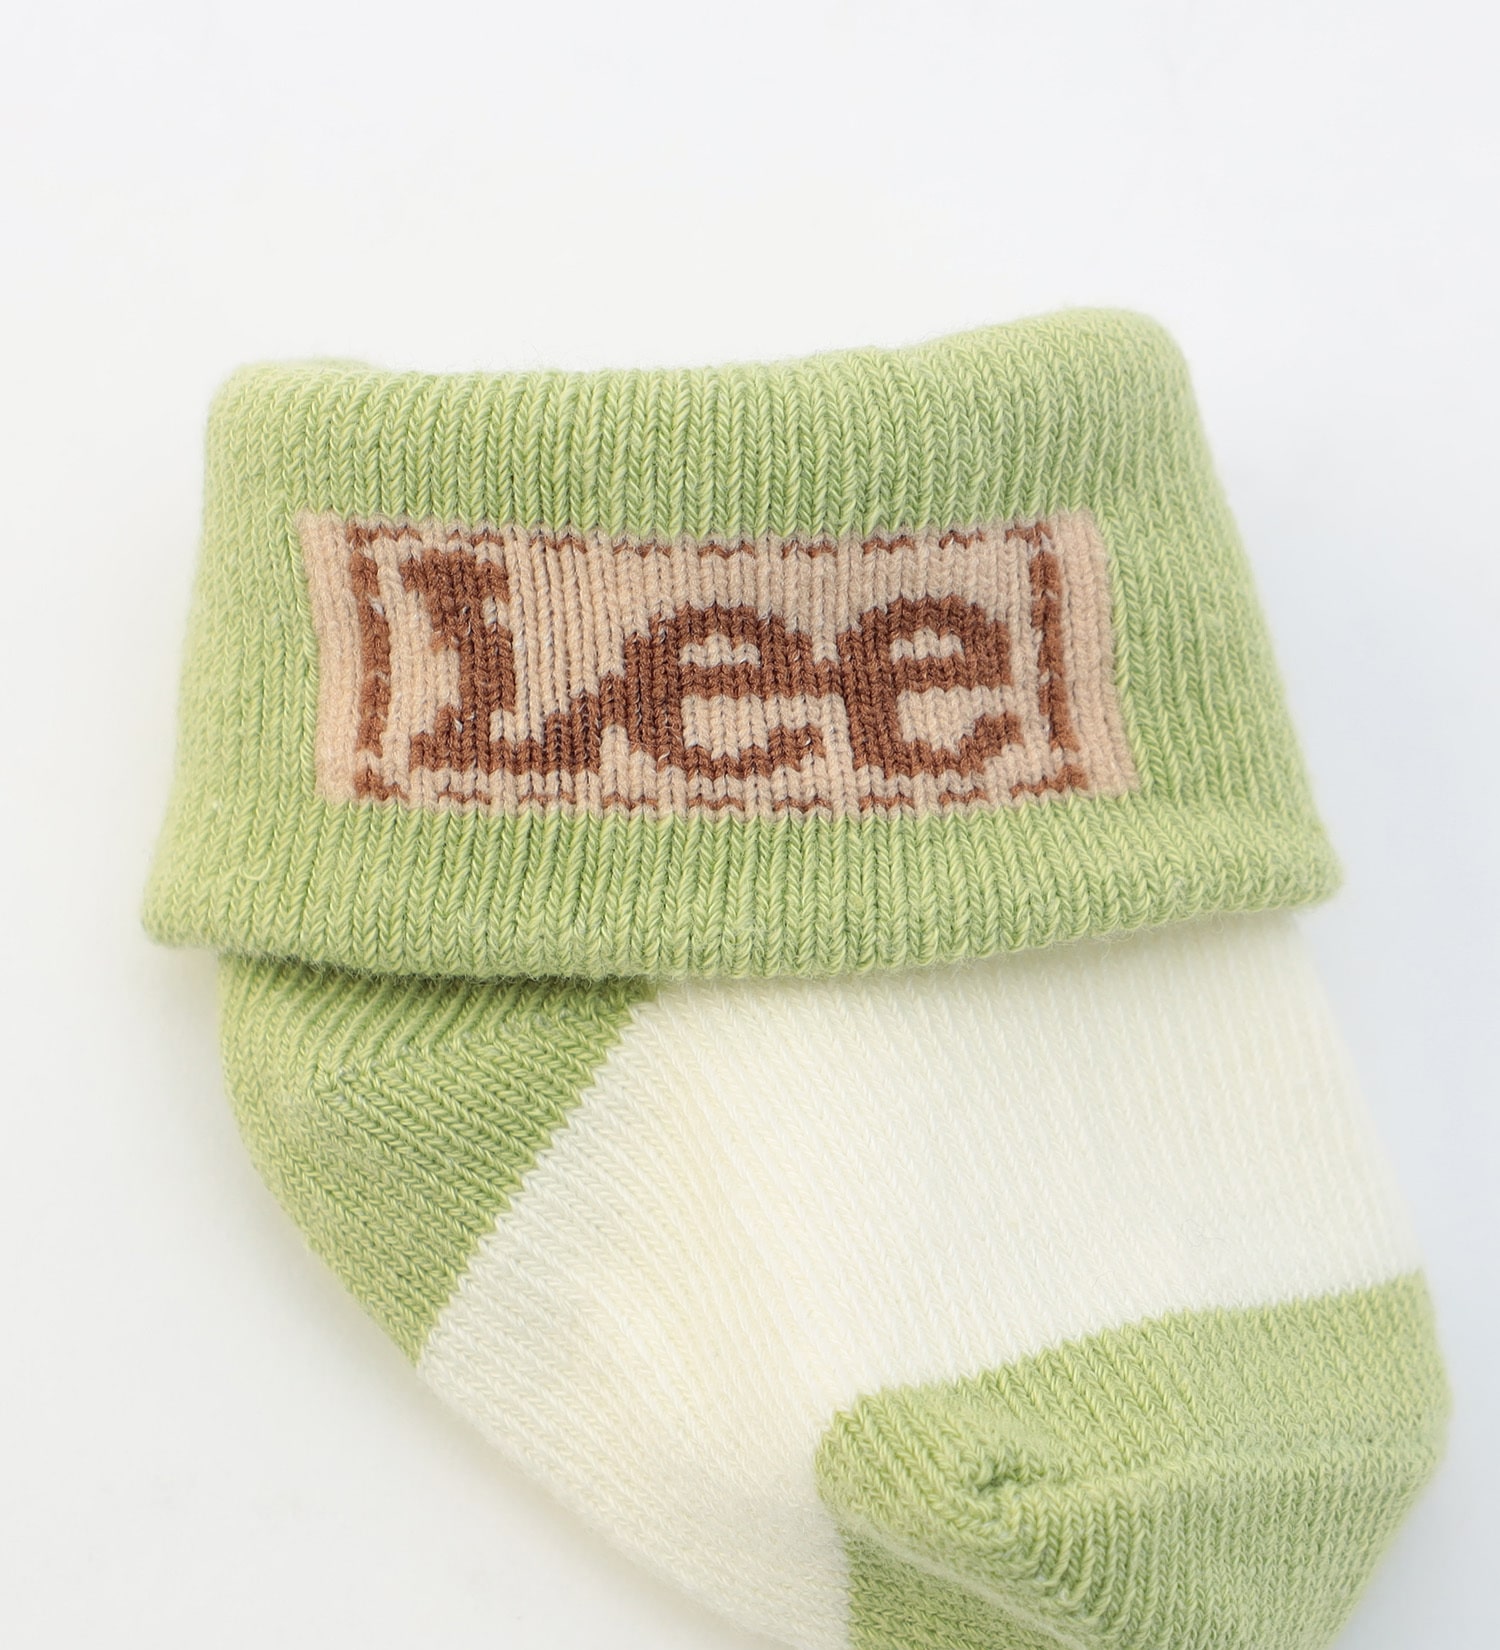 Lee(リー)のLee 新生児ソックス 2足組|ファッション雑貨/靴下/キッズ|その他1